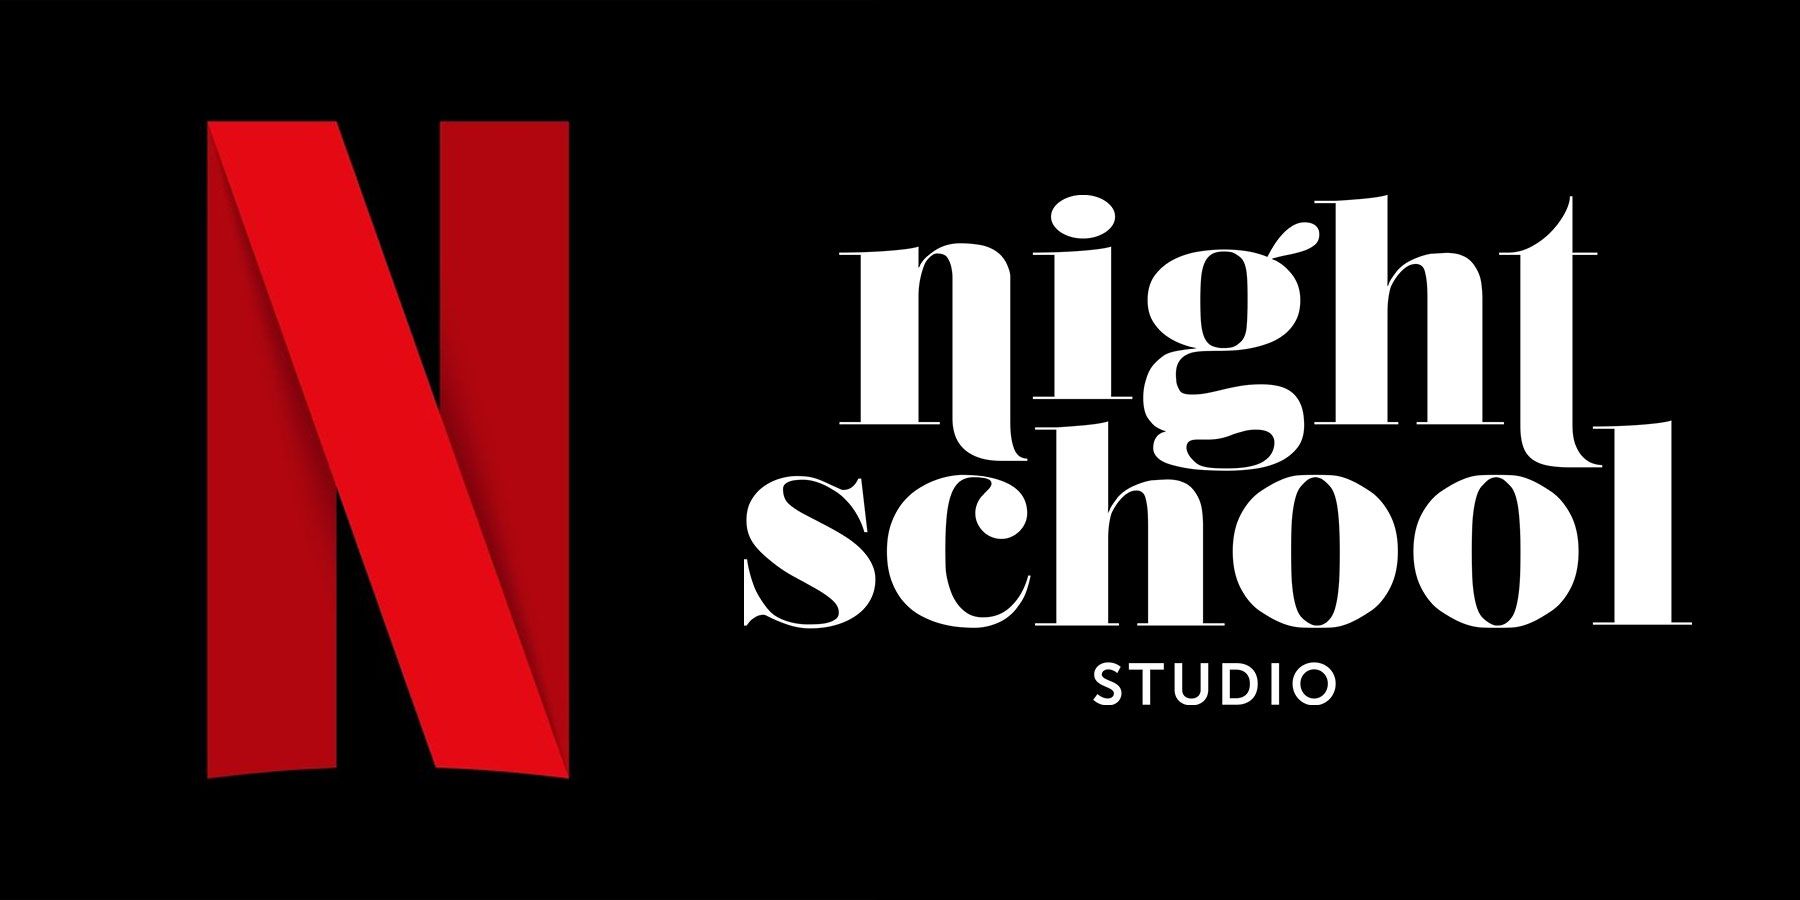 Το Netflix Acquiring Night School Studio είναι ένα καλό σημάδι για τις φιλοδοξίες του για ροή